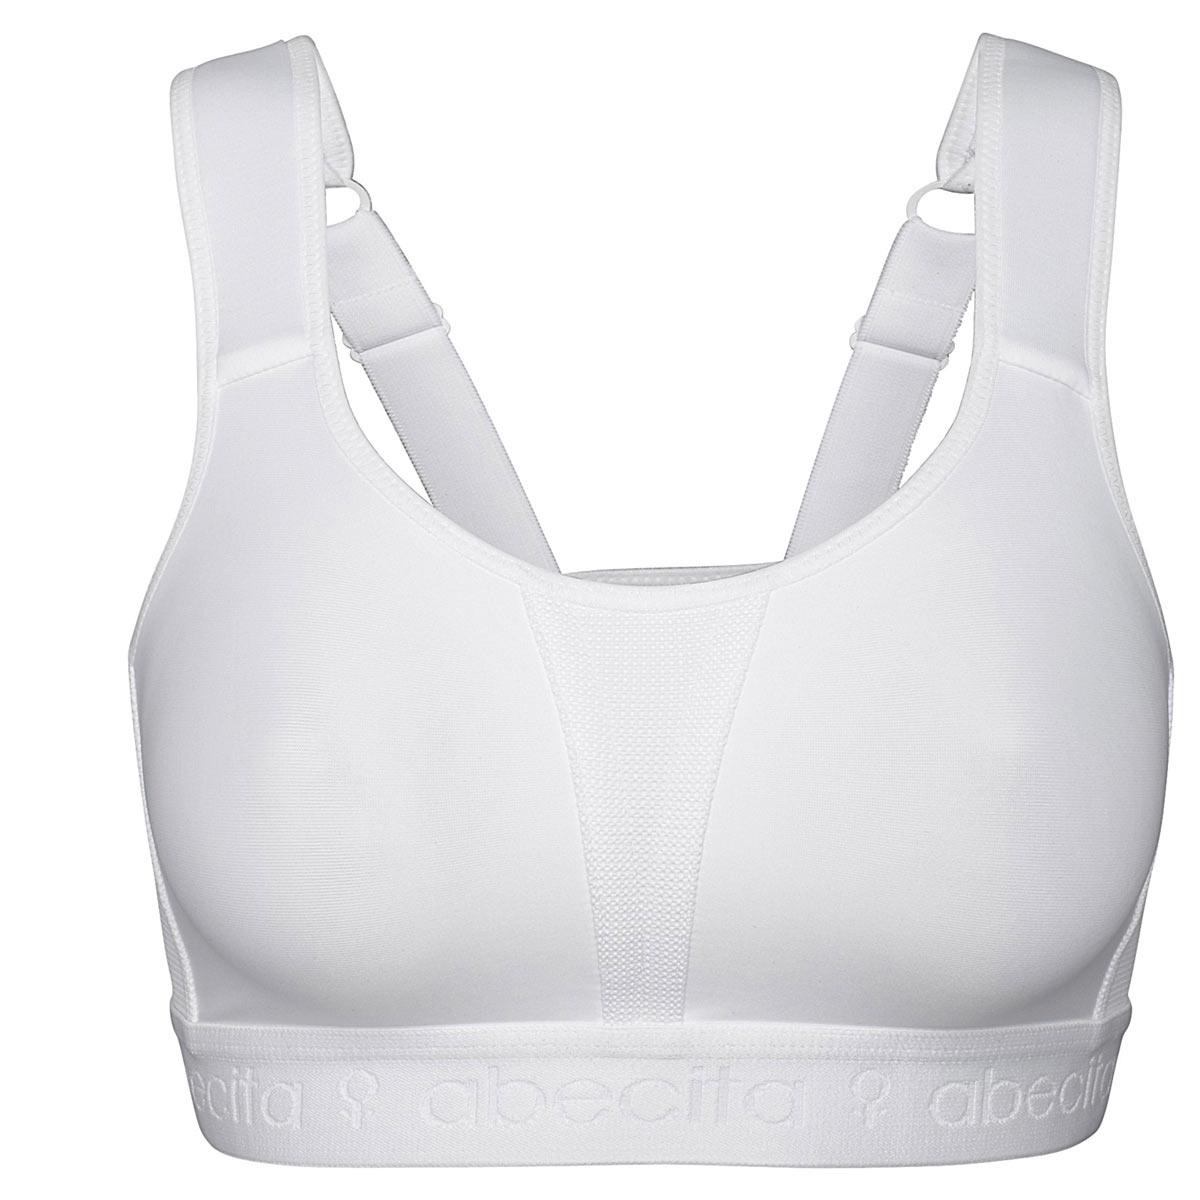 Abecita Sport-BH Modell Kimberly in Farbe weiß - Frontansicht